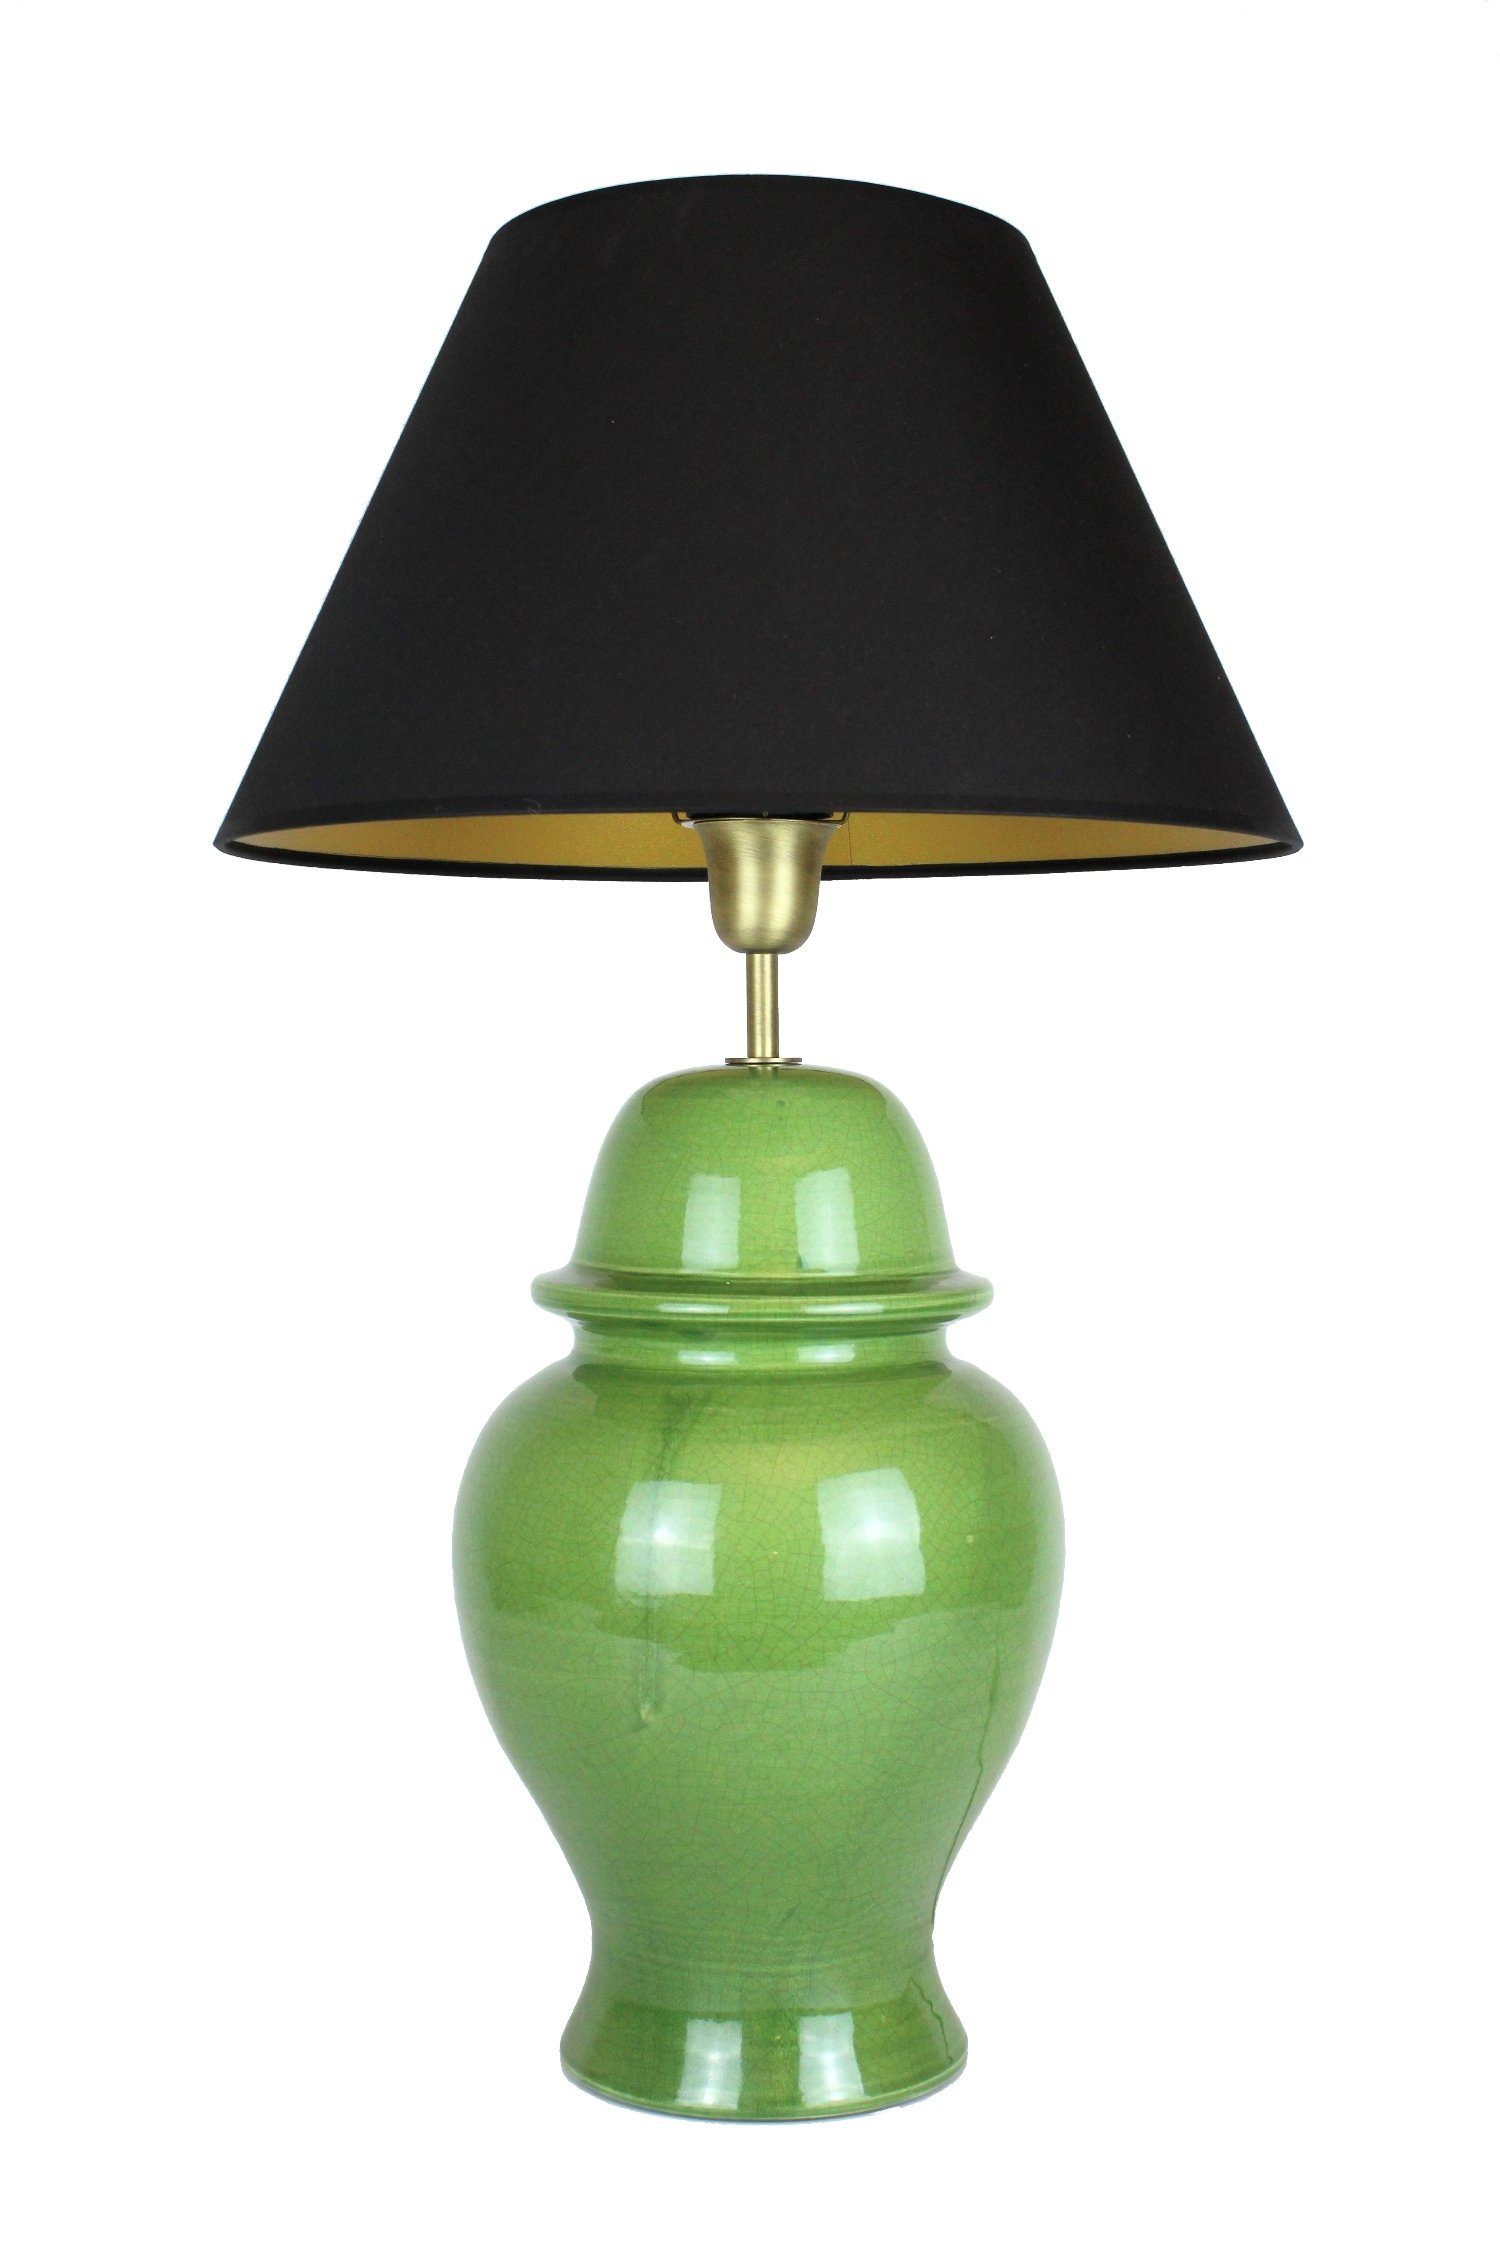 Signature Home Collection Tischleuchte Tischlampe Keramik grün mit Lampenschirm schwarz Tempelvase, ohne Leuchtmittel, warmweiß, Tischlampe handgefertigt in Italien